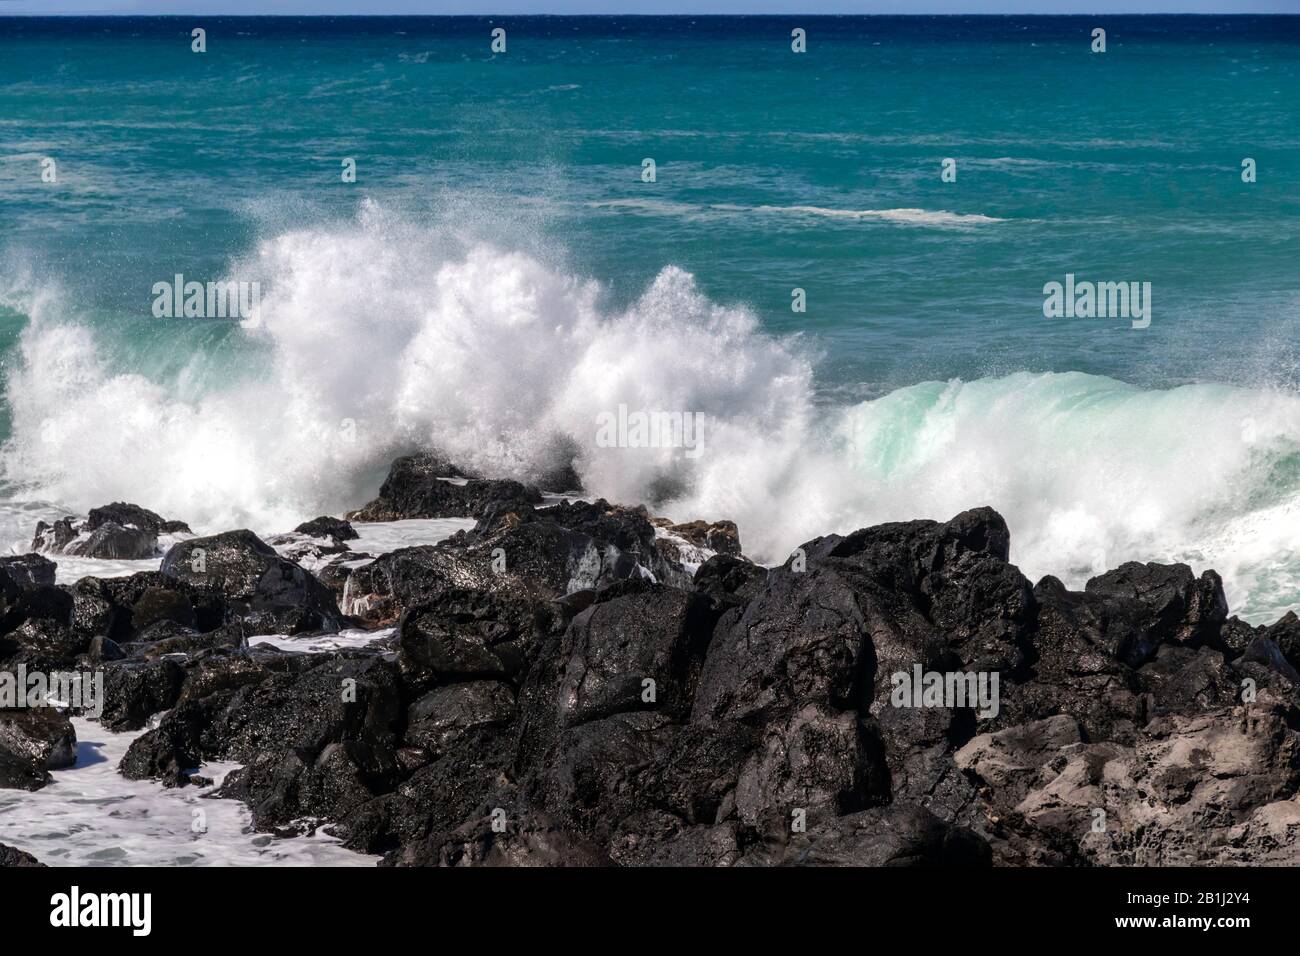 Rupture de la vague blanche contre les roches volcaniques noires sur la côte Kona de la Grande île d'Hawaï. Océan pacifique bleu-vert vif au loin. Banque D'Images